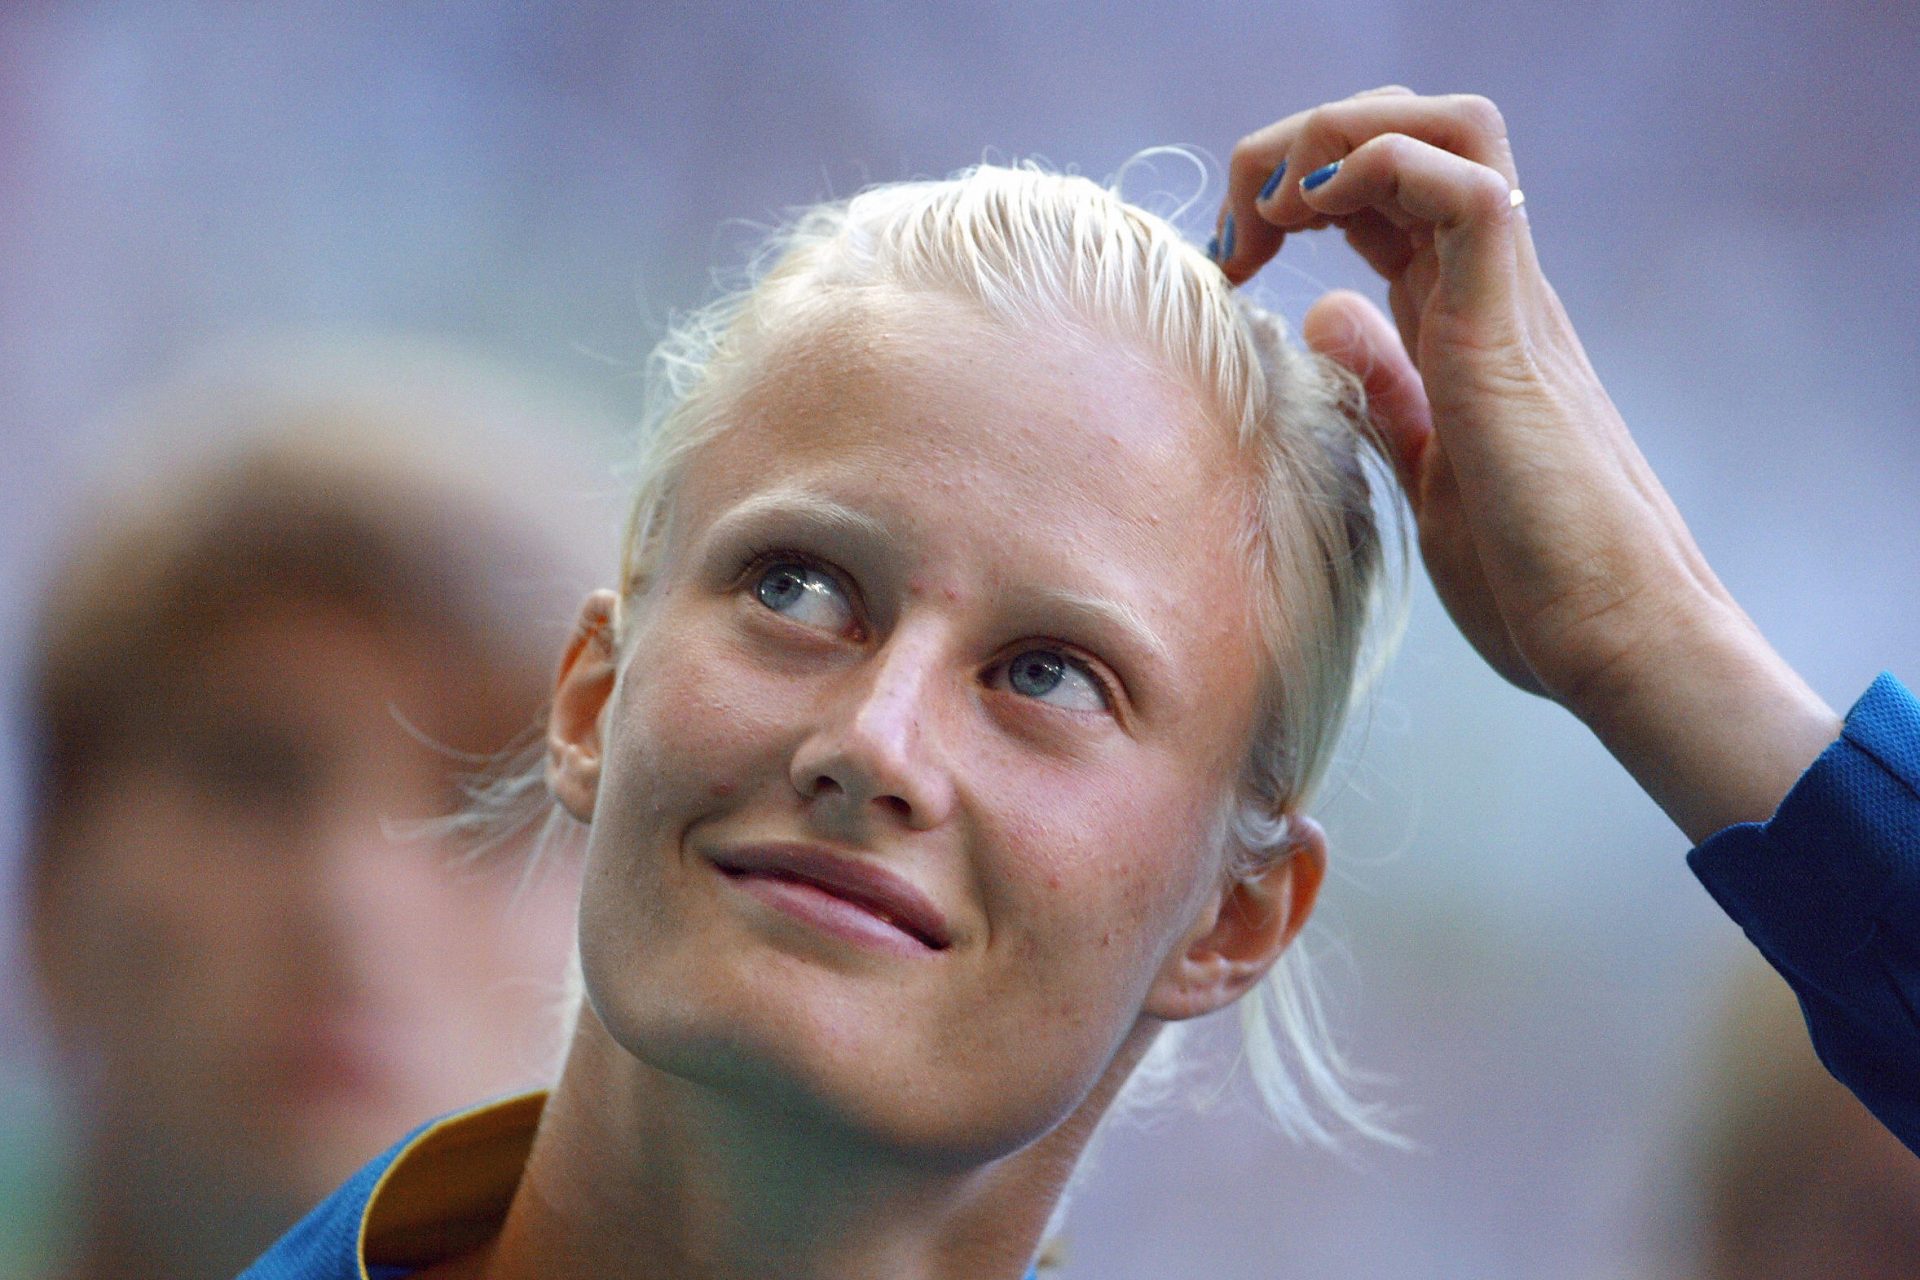 What happened to Sweden's athletics superstar Carolina Kluft?